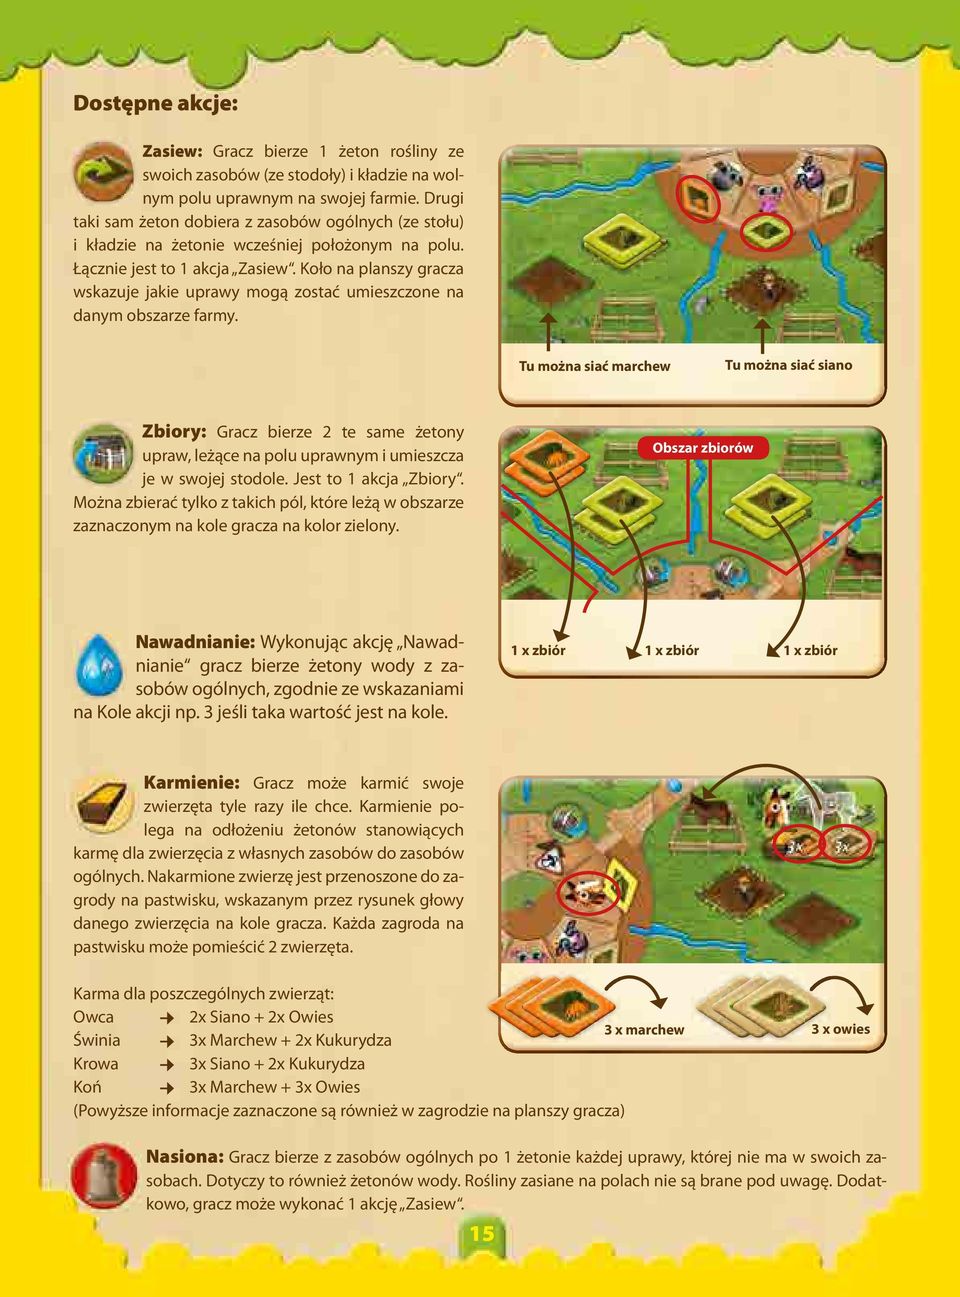 Koło na planszy gracza wskazuje jakie uprawy mogą zostać umieszczone na danym obszarze farmy.